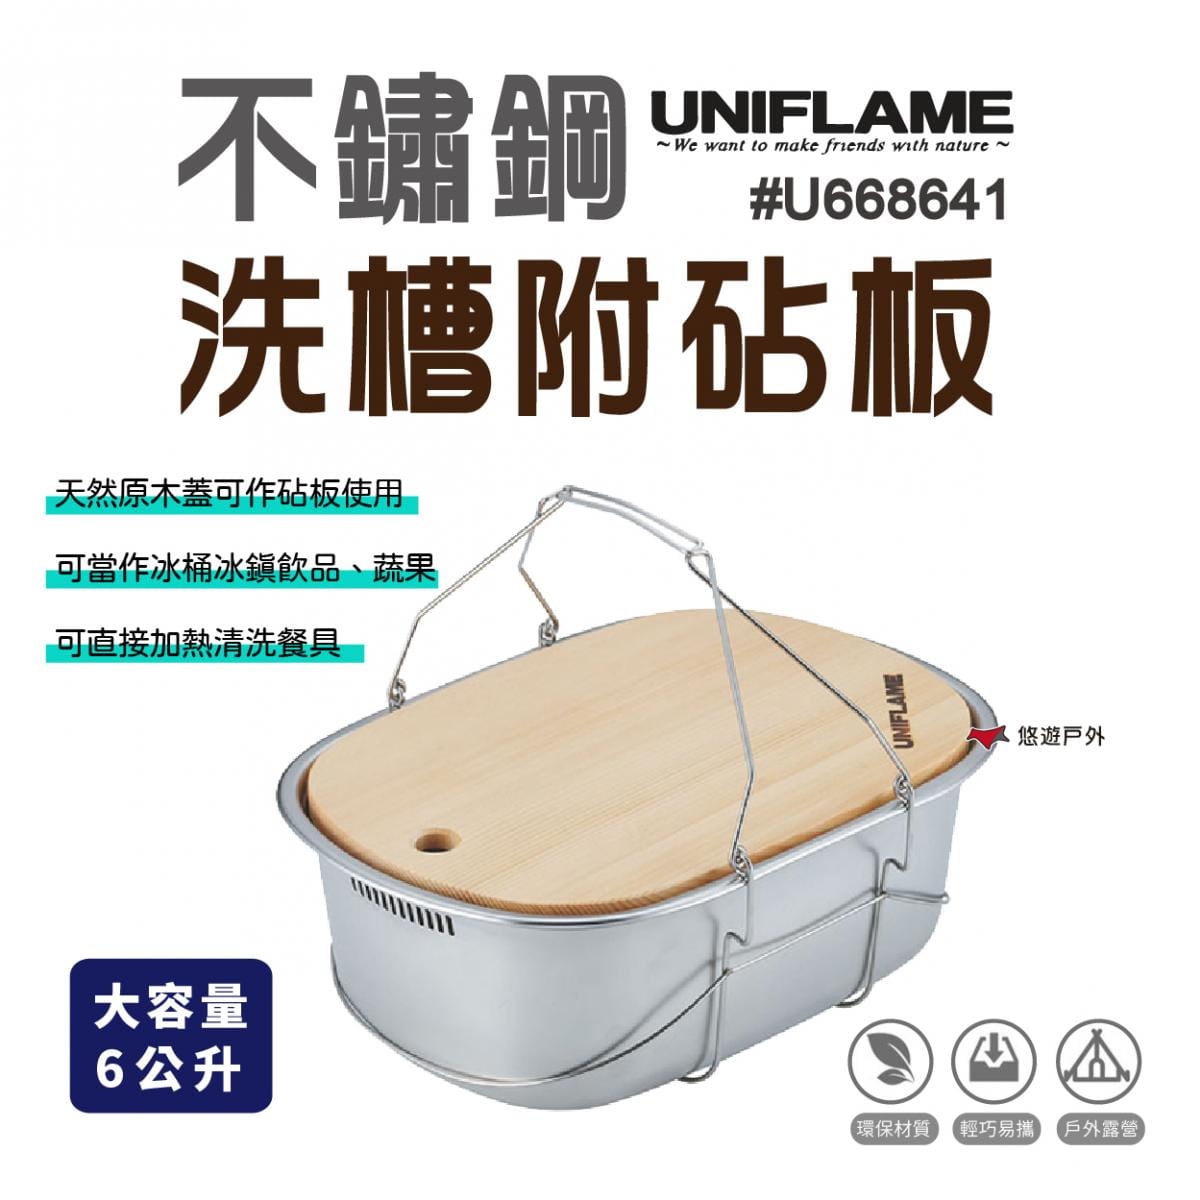 【UNIFLAME】不鏽鋼洗槽附砧板_6L (悠遊戶外) 0